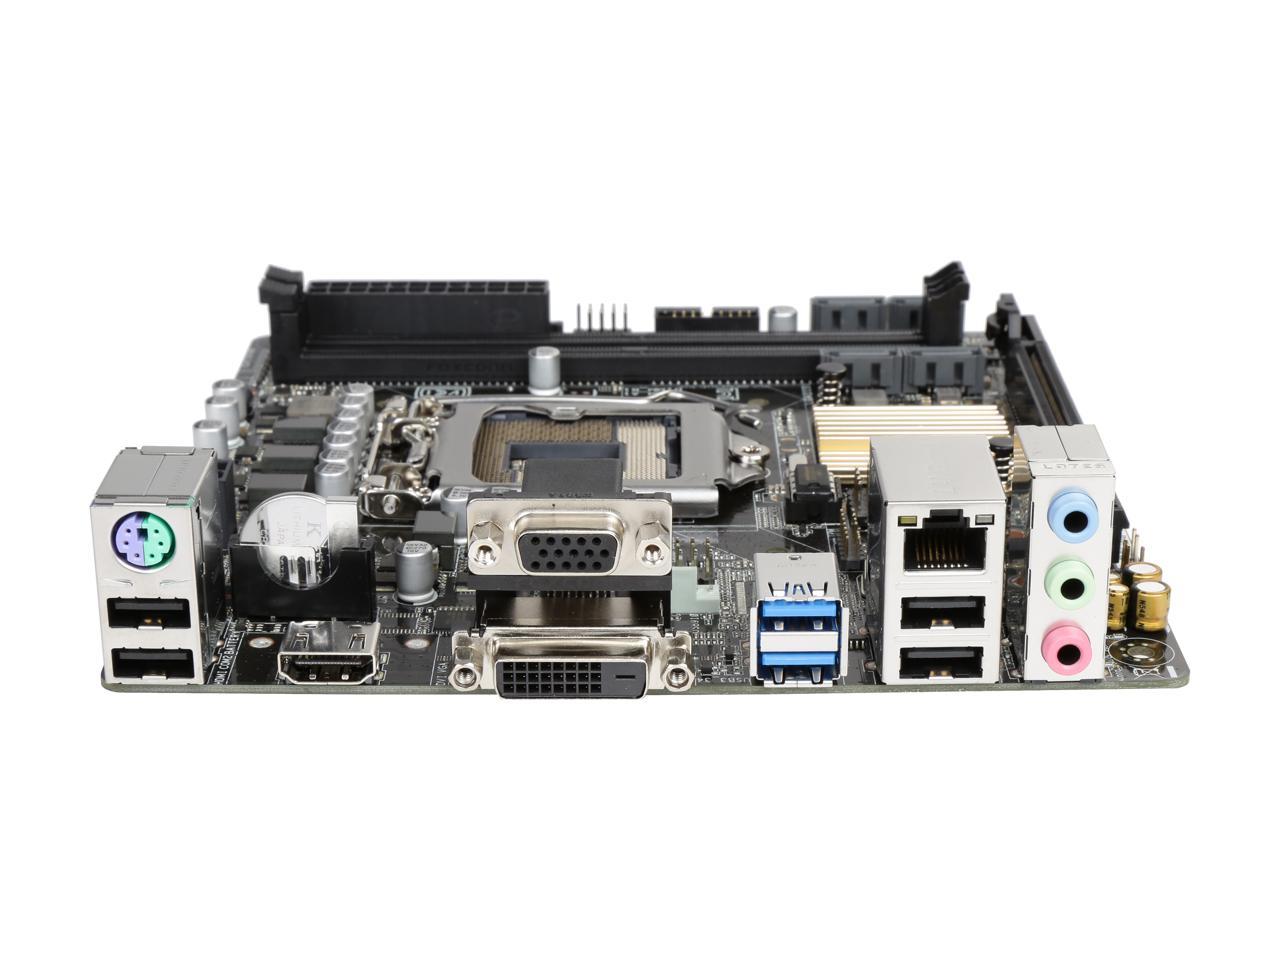 ASUS H110I-PLUS/CSM LGA 1151 Intel H110 HDMI SATA 6Gb/s USB 3.1 Mini ITX Intel Motherboard